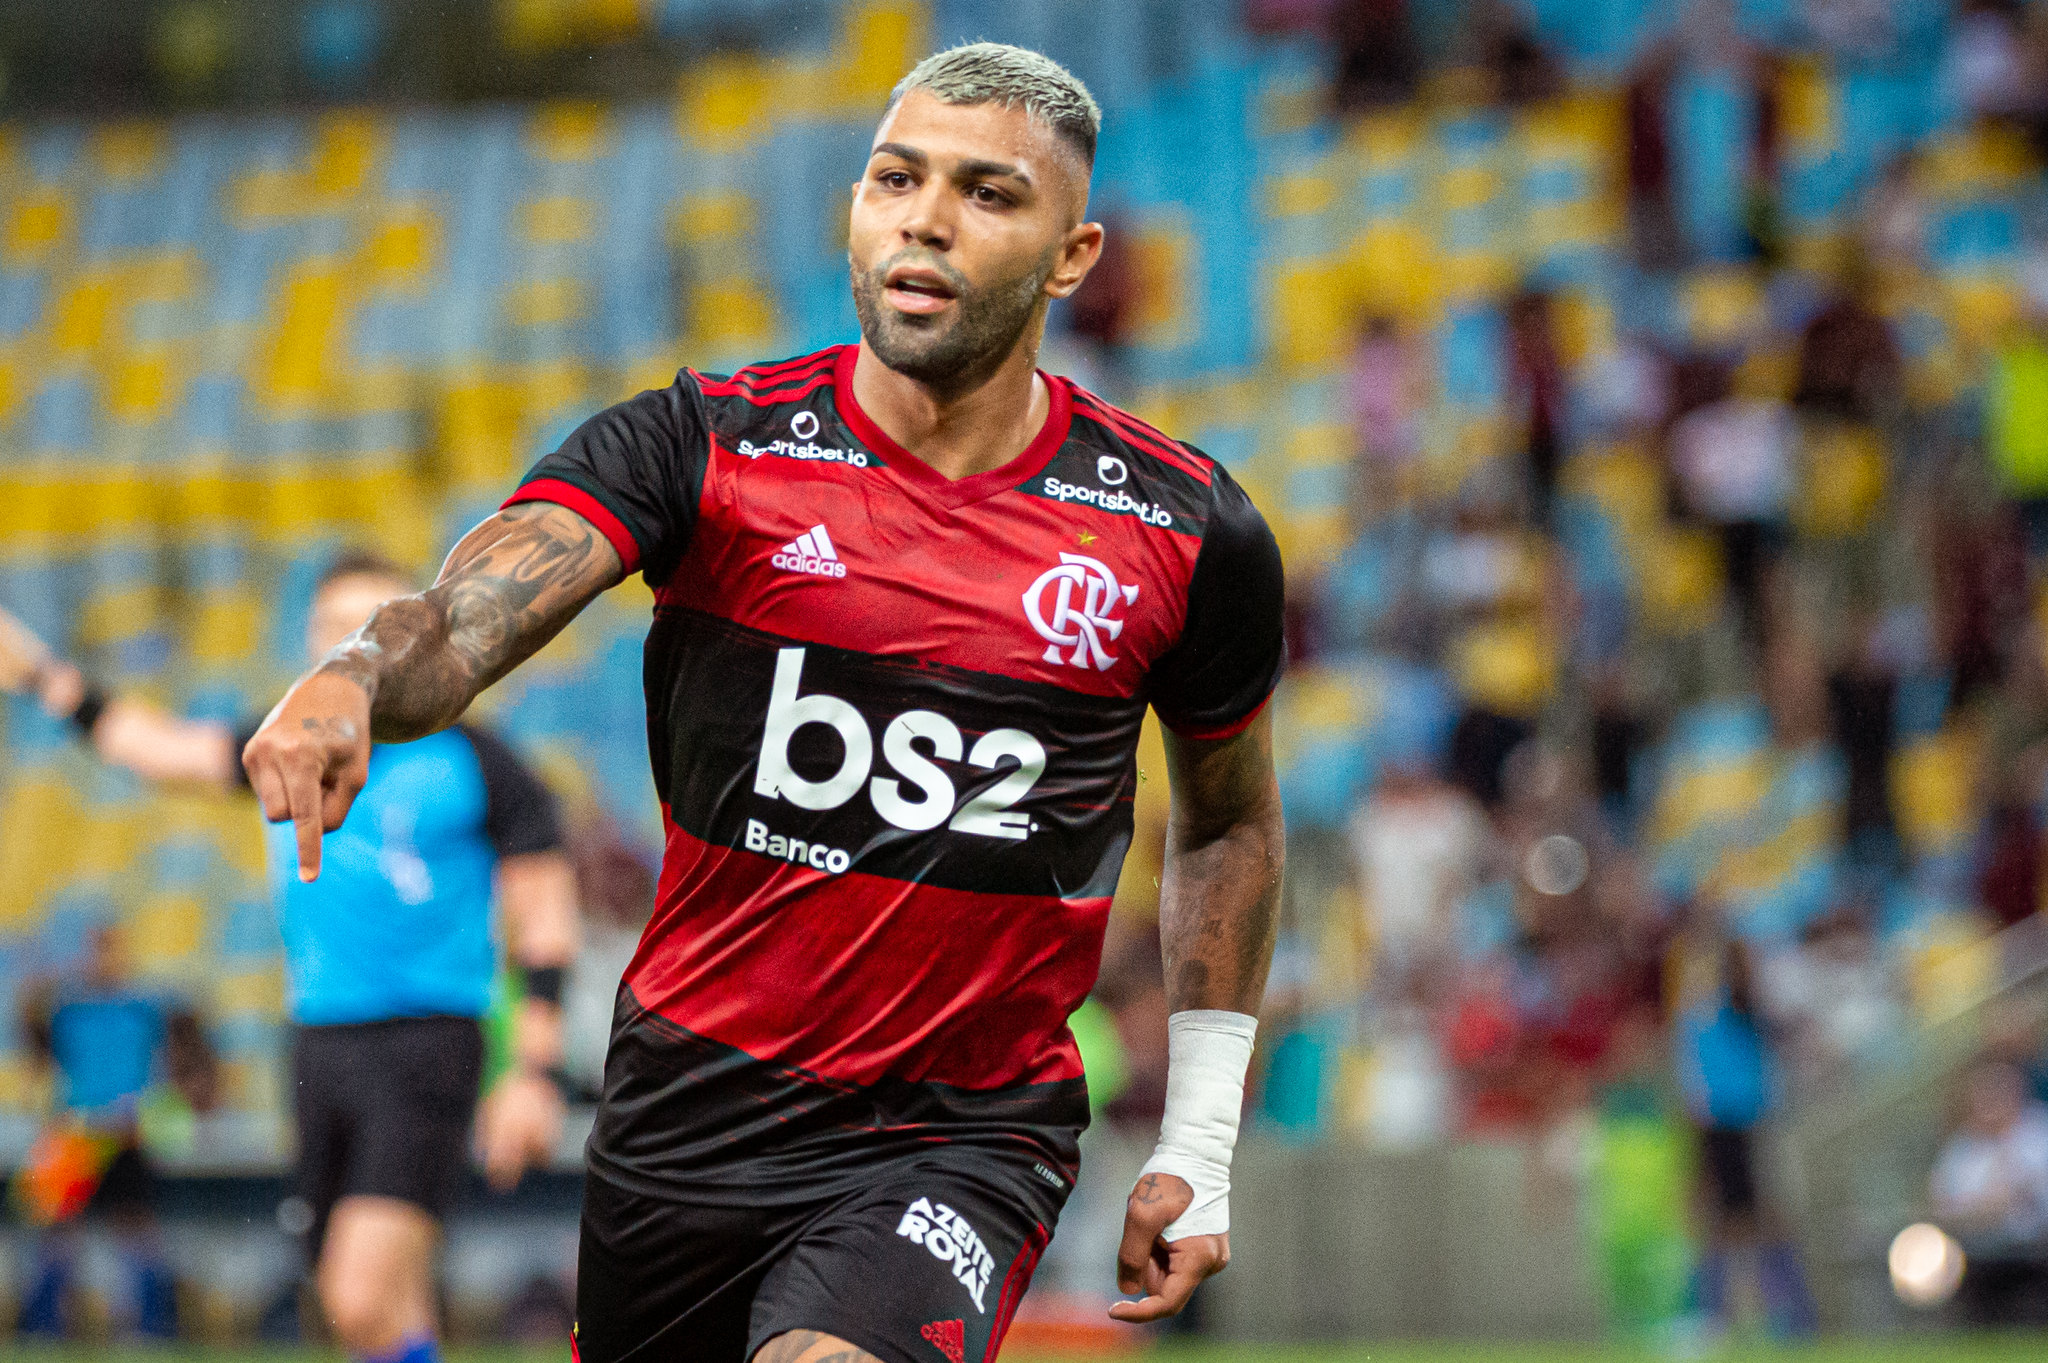 Atacante do Flamengo, Gabriel Barbosa, com 8 gols, é o artilheiro do Campeonato Carioca.